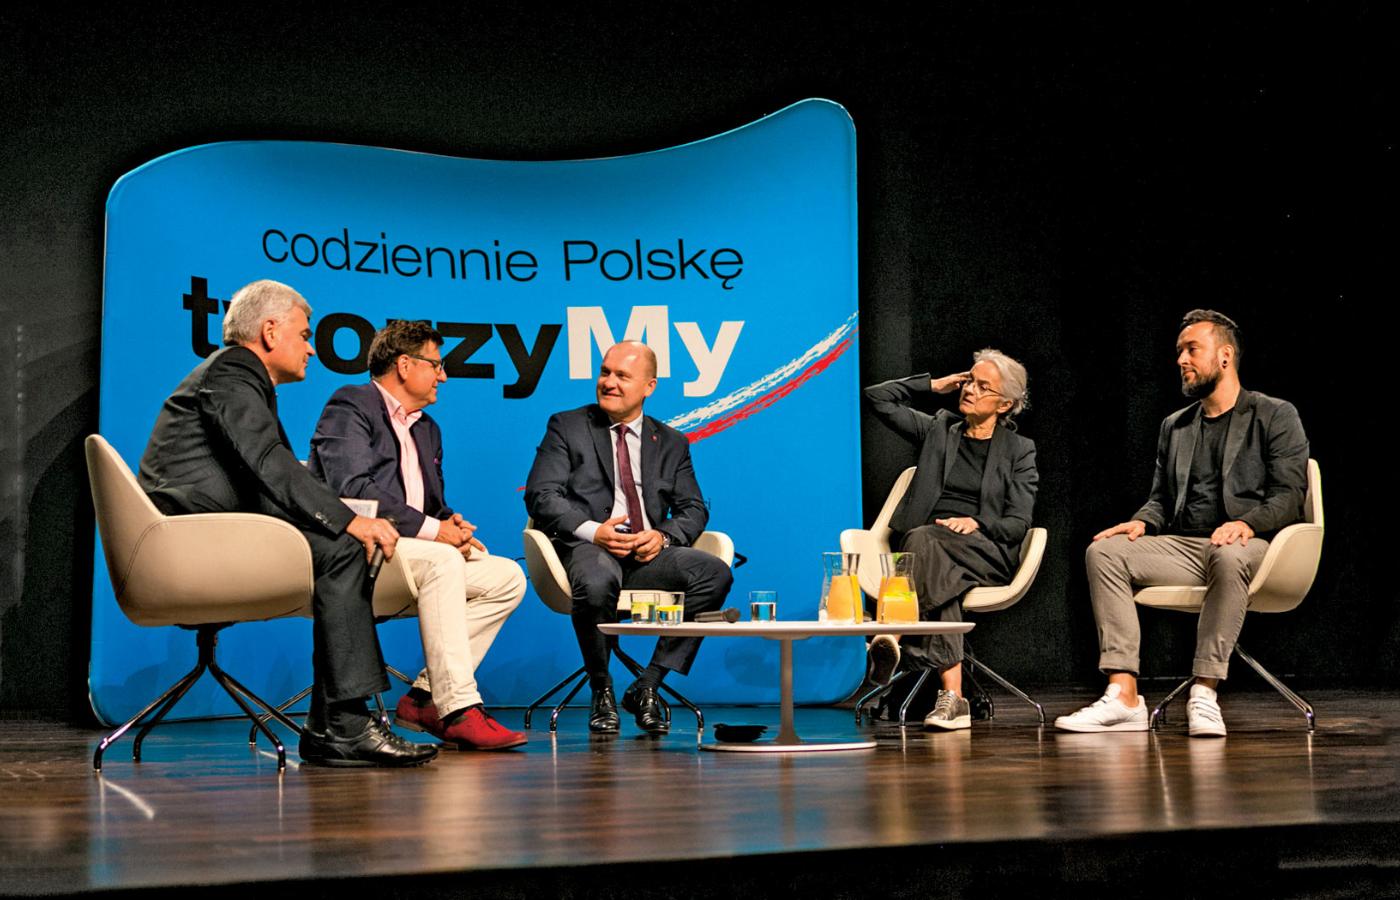 Paneliści debaty, od lewej: Edwin Bendyk, Roman Czejarek, Piotr Krzystek, Anna Augustynowicz i Marcin Galicki.